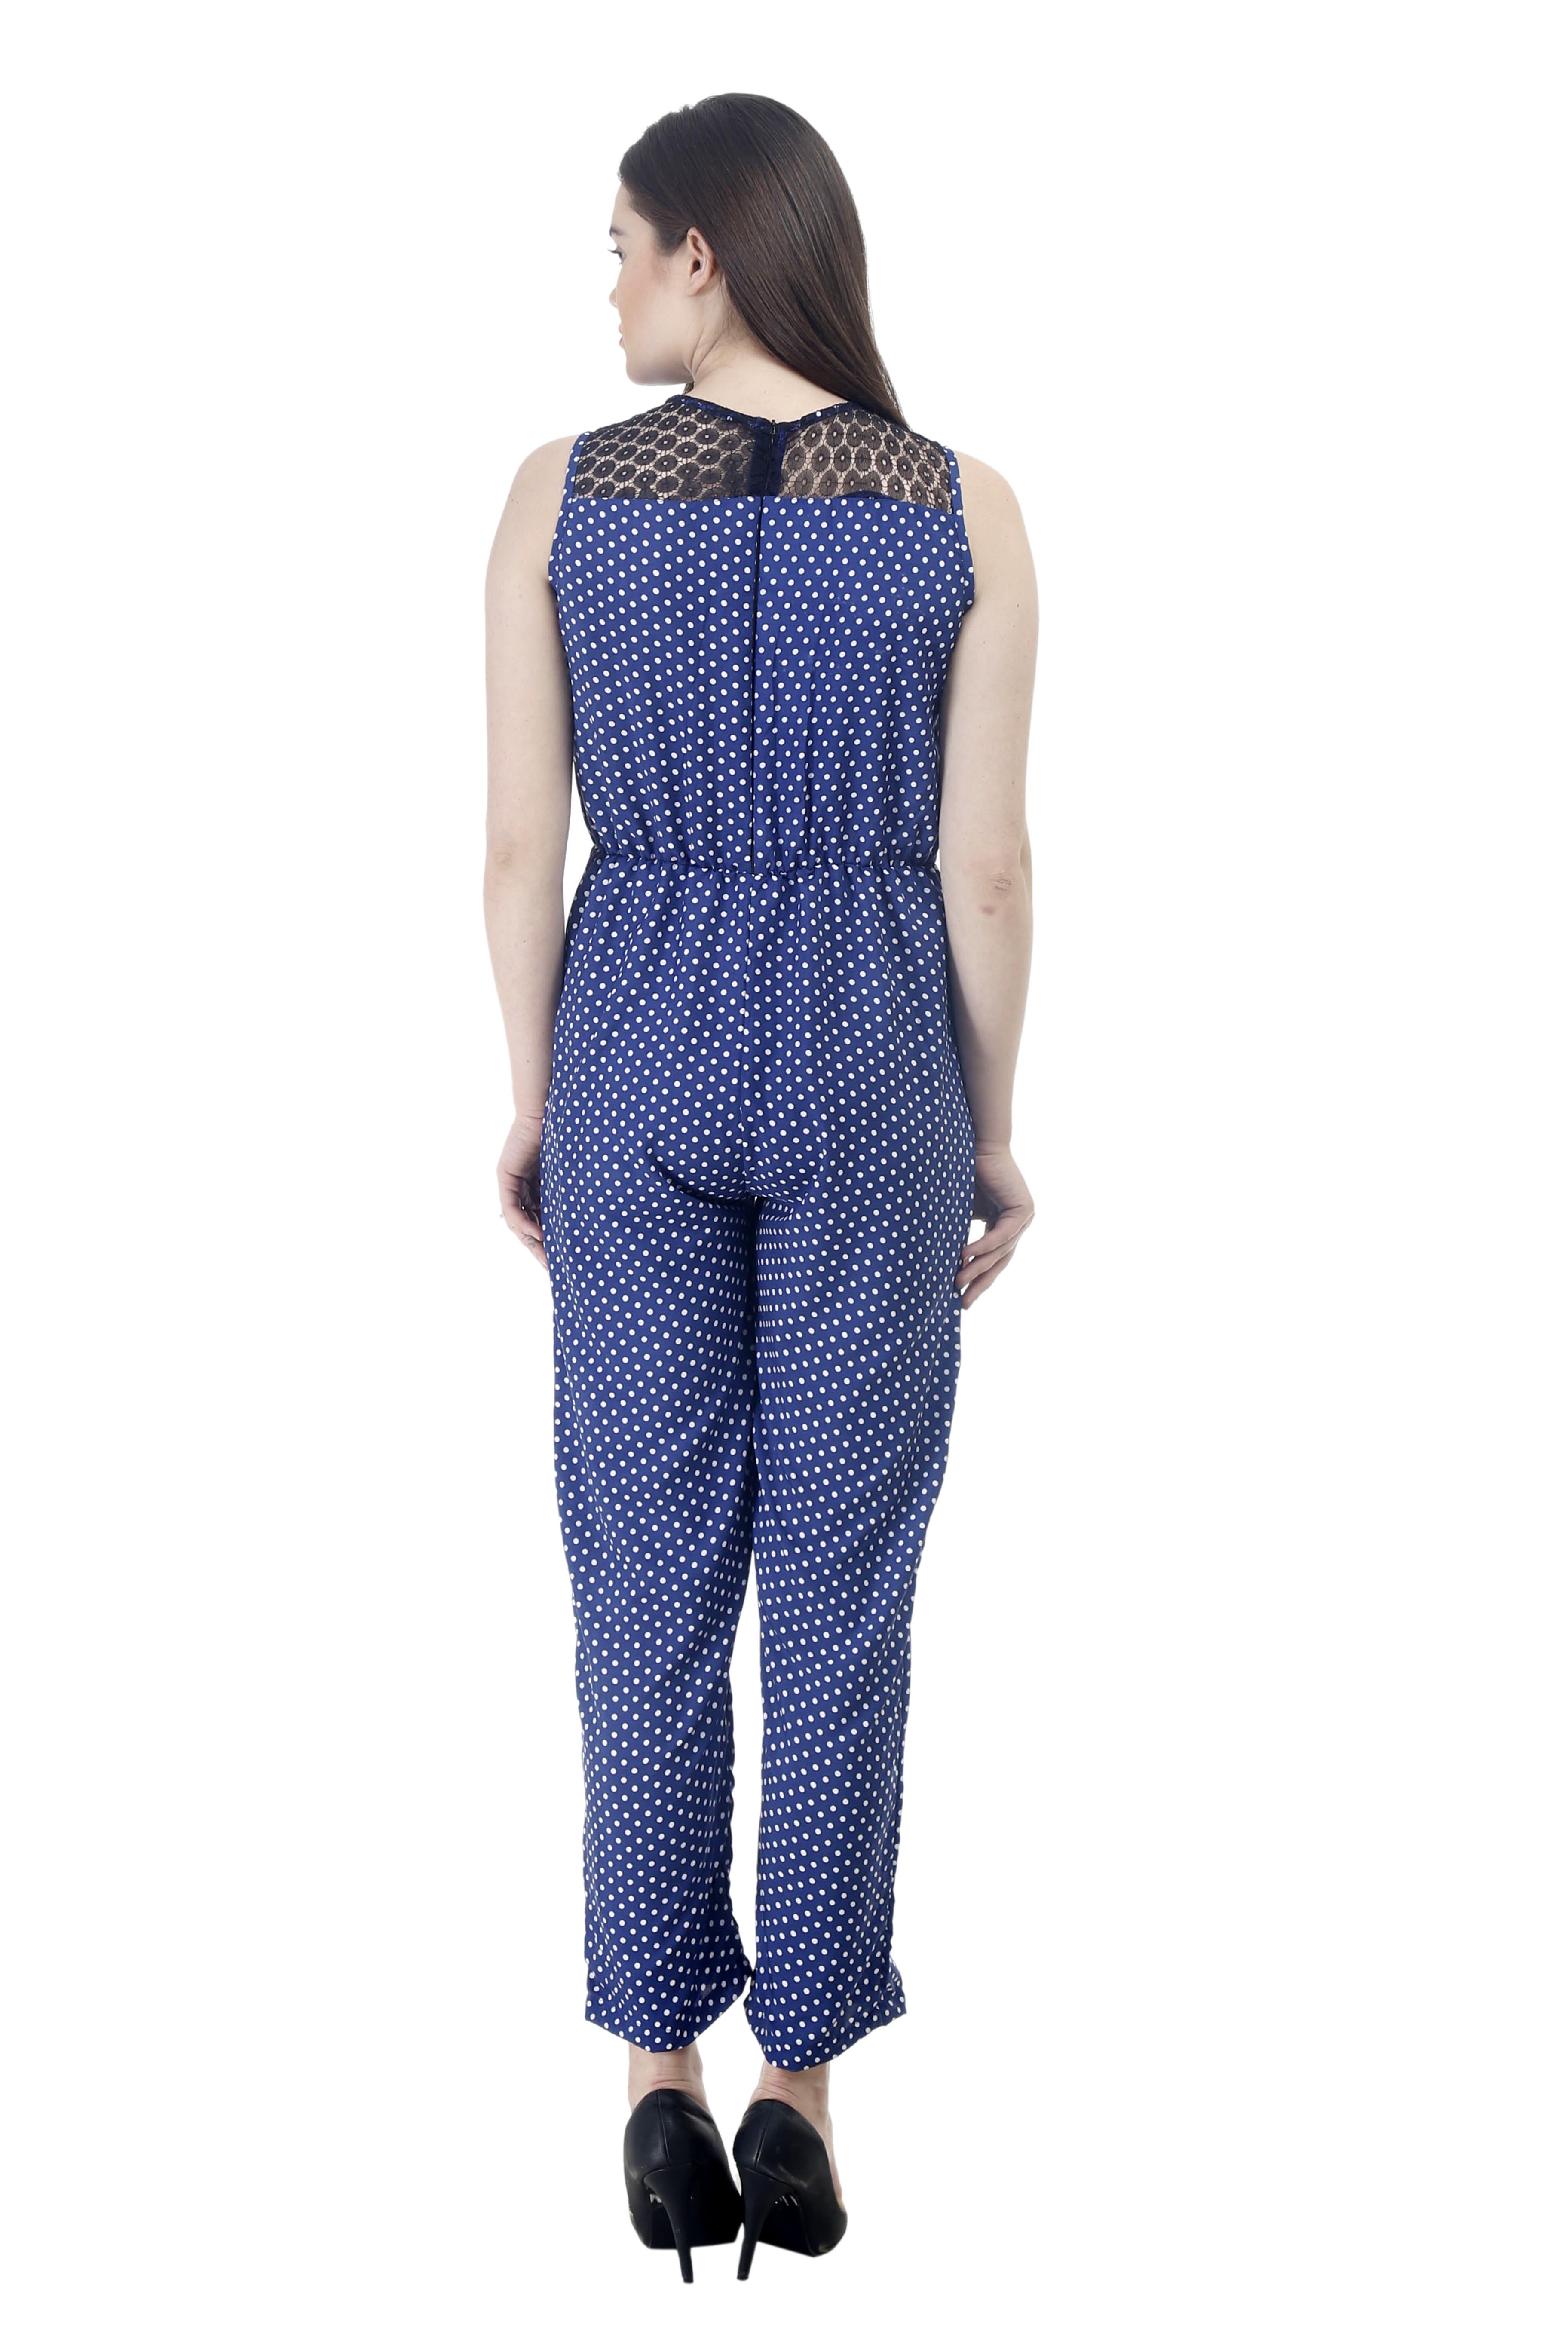 Buy Westrobe Women Nevy Blue Polka Dot Jumpsuit Online @ ₹999 from ...